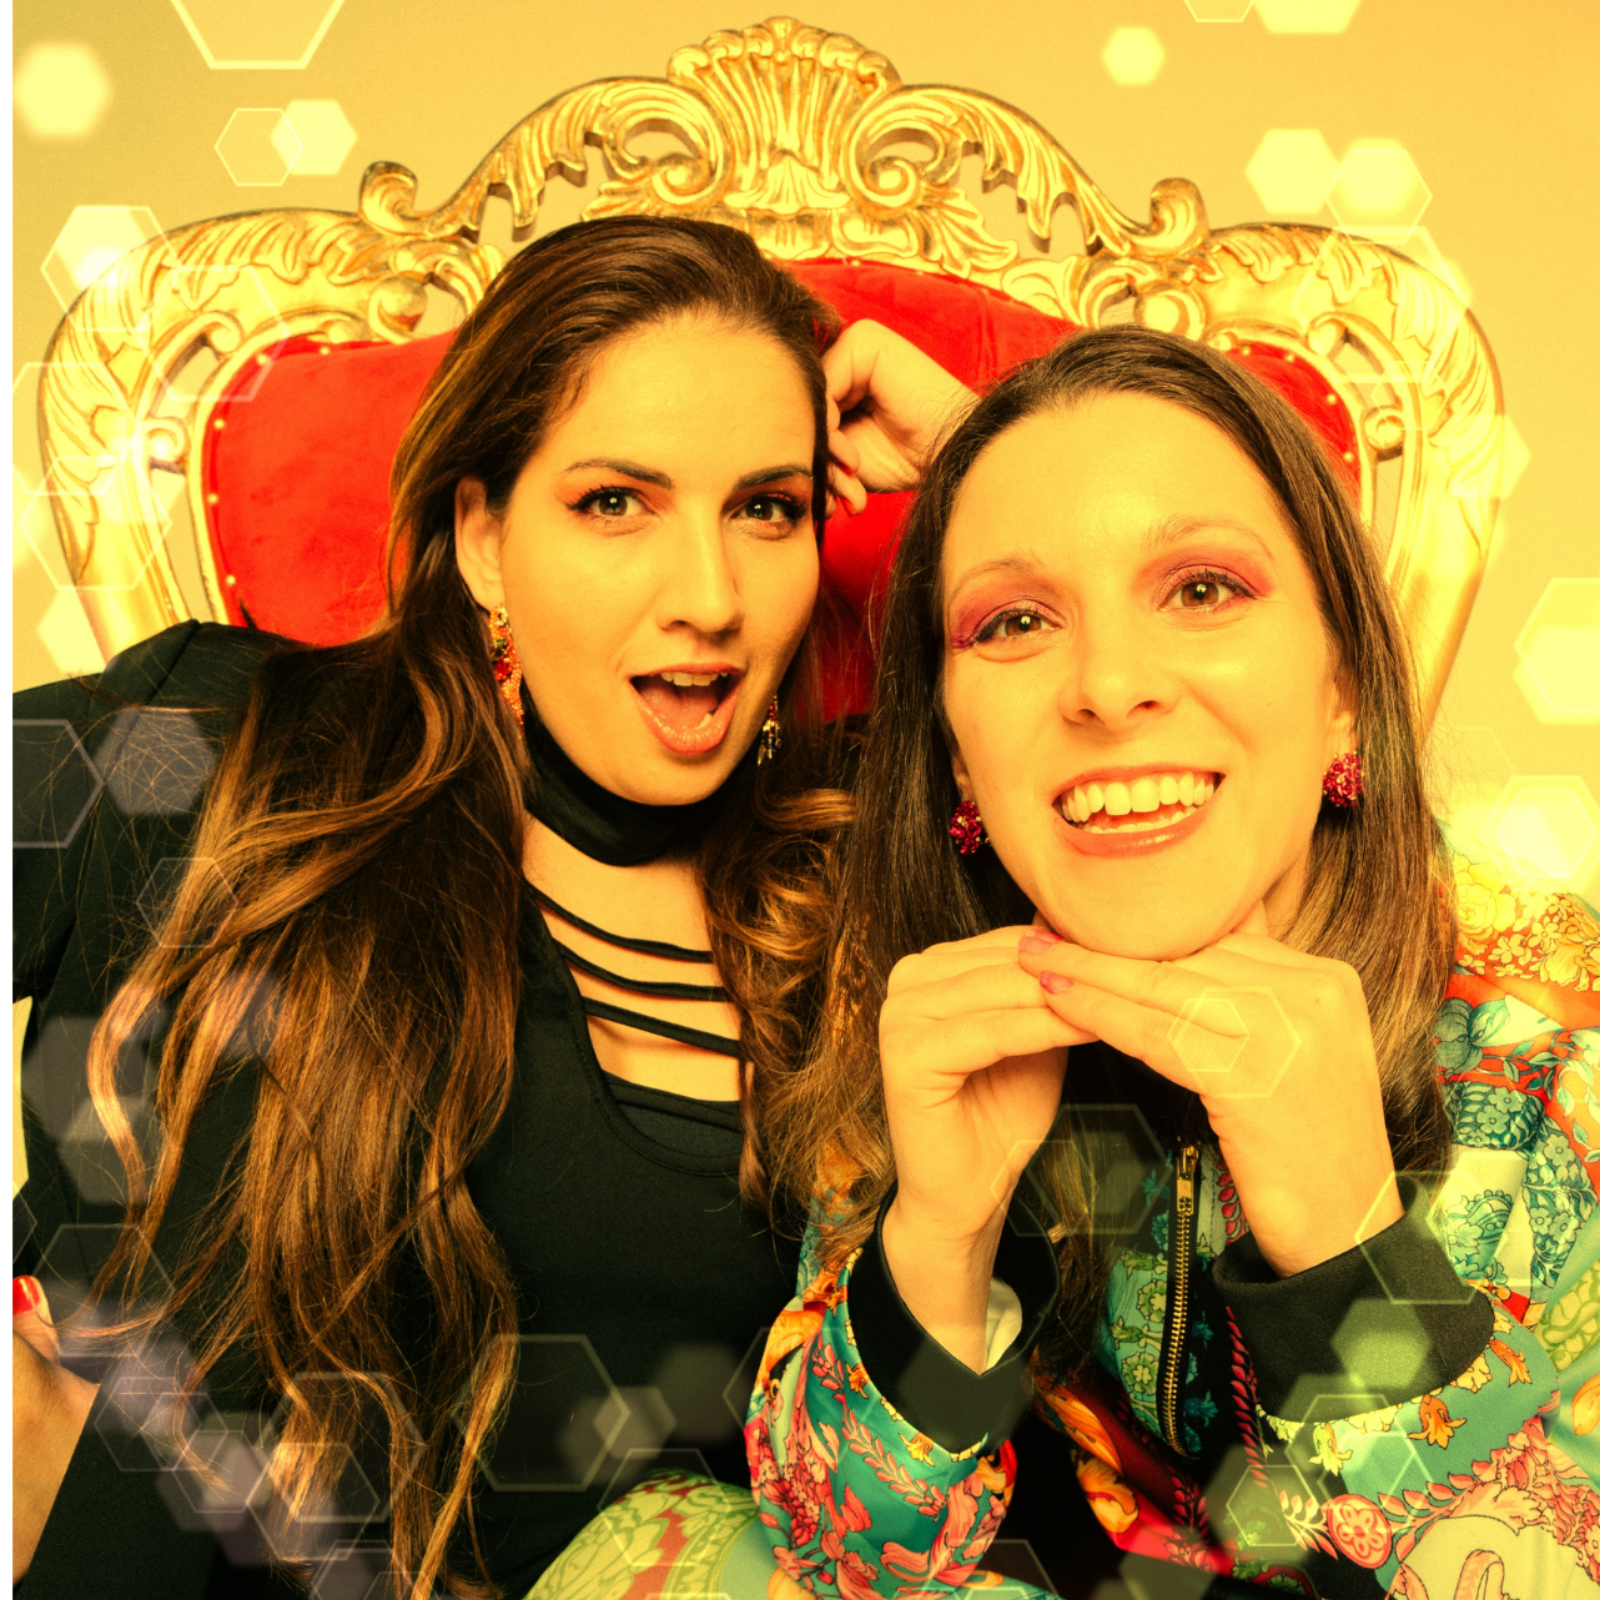 Mariana Risquez y Brittany Accardi Estrenan Nuevo Sencillo Titulado “Queen Bee”, una Fusión de Bubblegum-pop, Dance Electronico y Latin Swagger